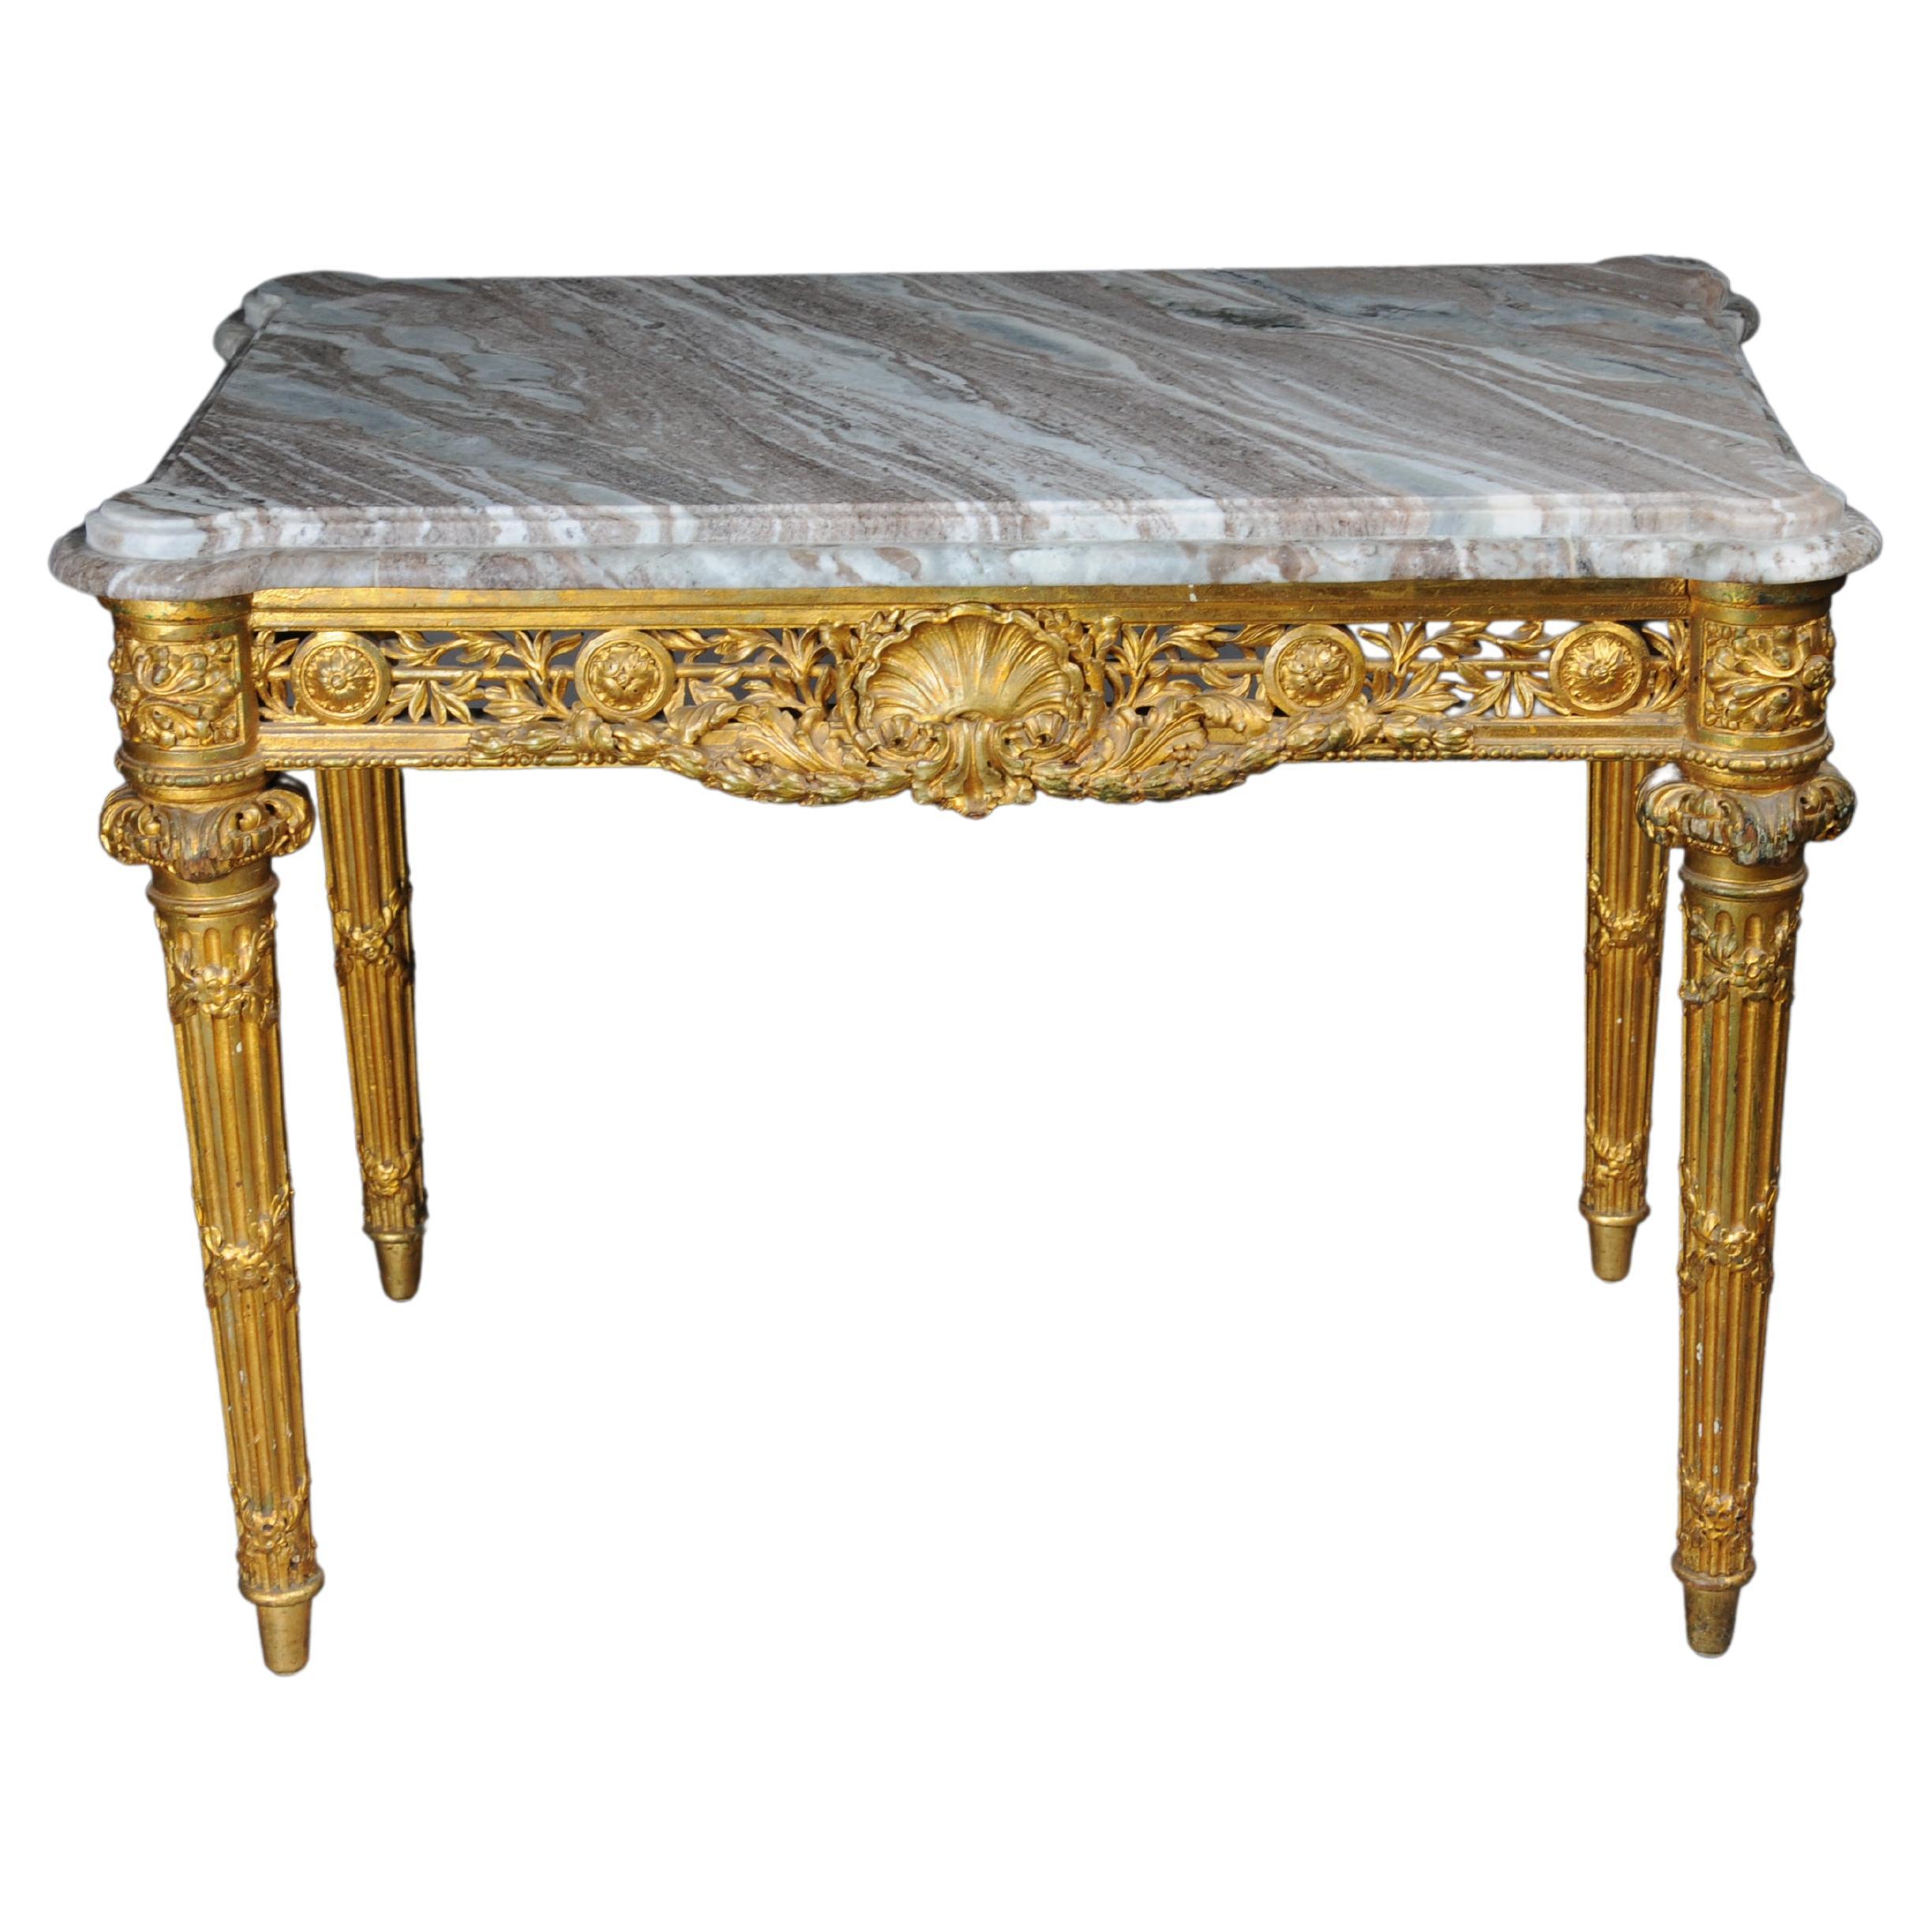 Table basse/table console ancienne de musée en marbre doré, datant d'environ 1860, Paris